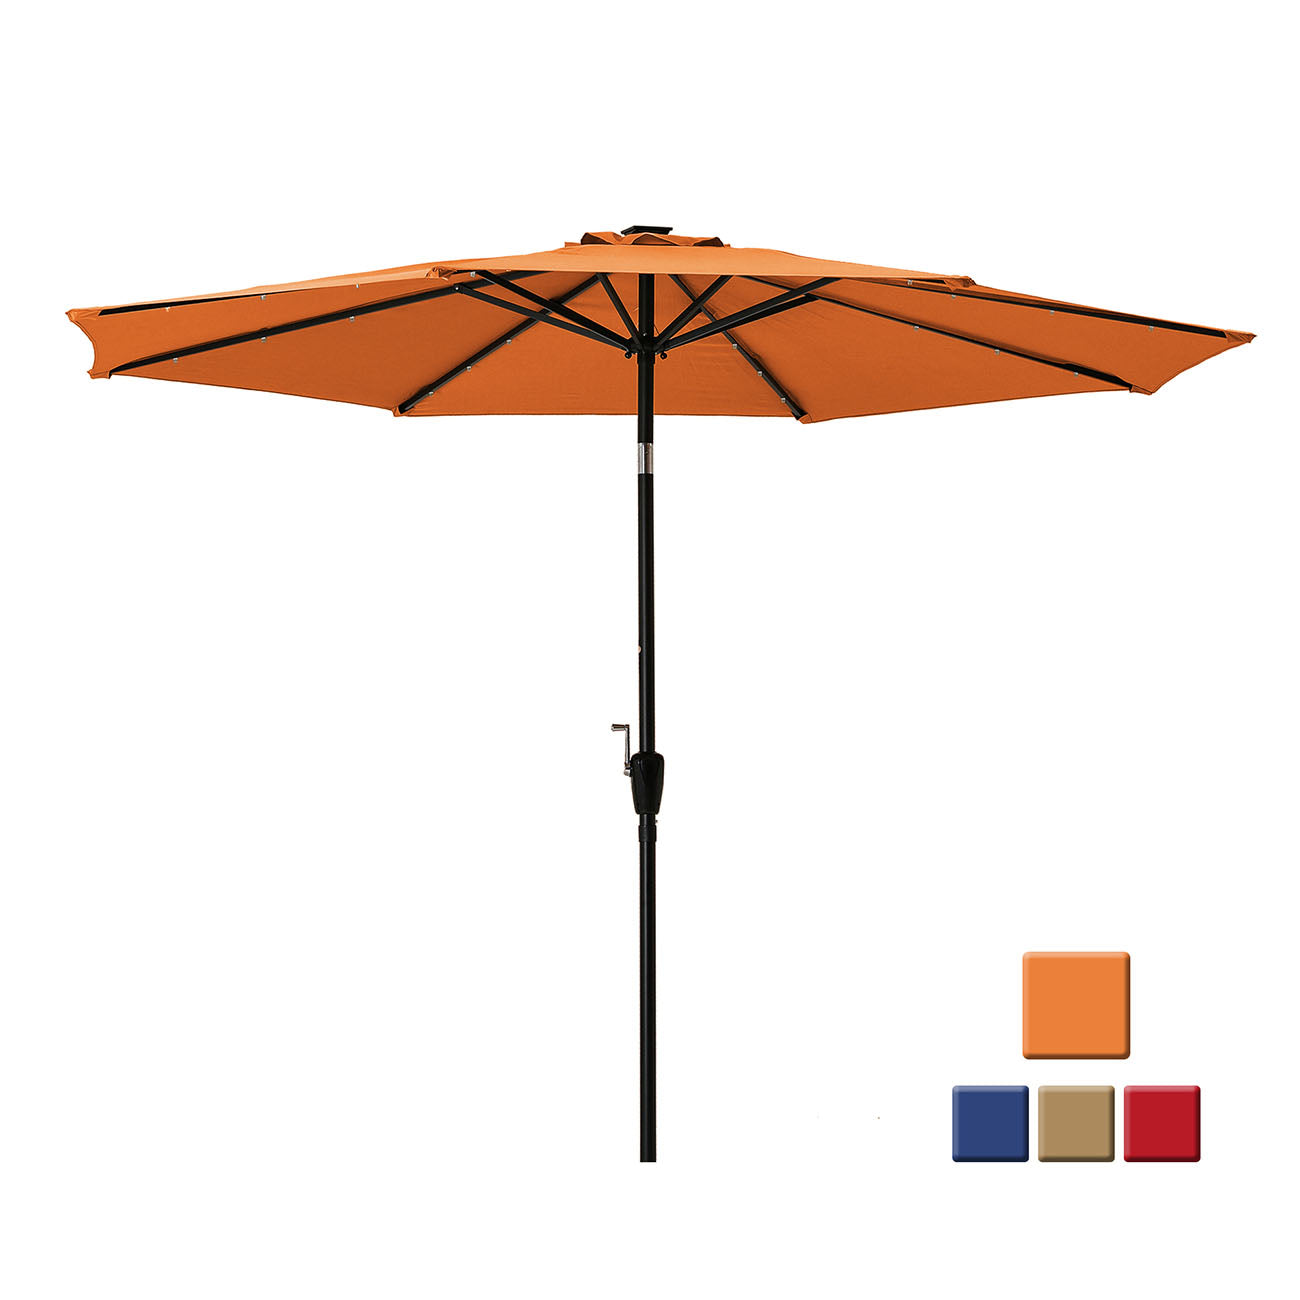 Boyel Living 10-ft Patio Umbrella with LED Lights (Orange)-Boyel Living